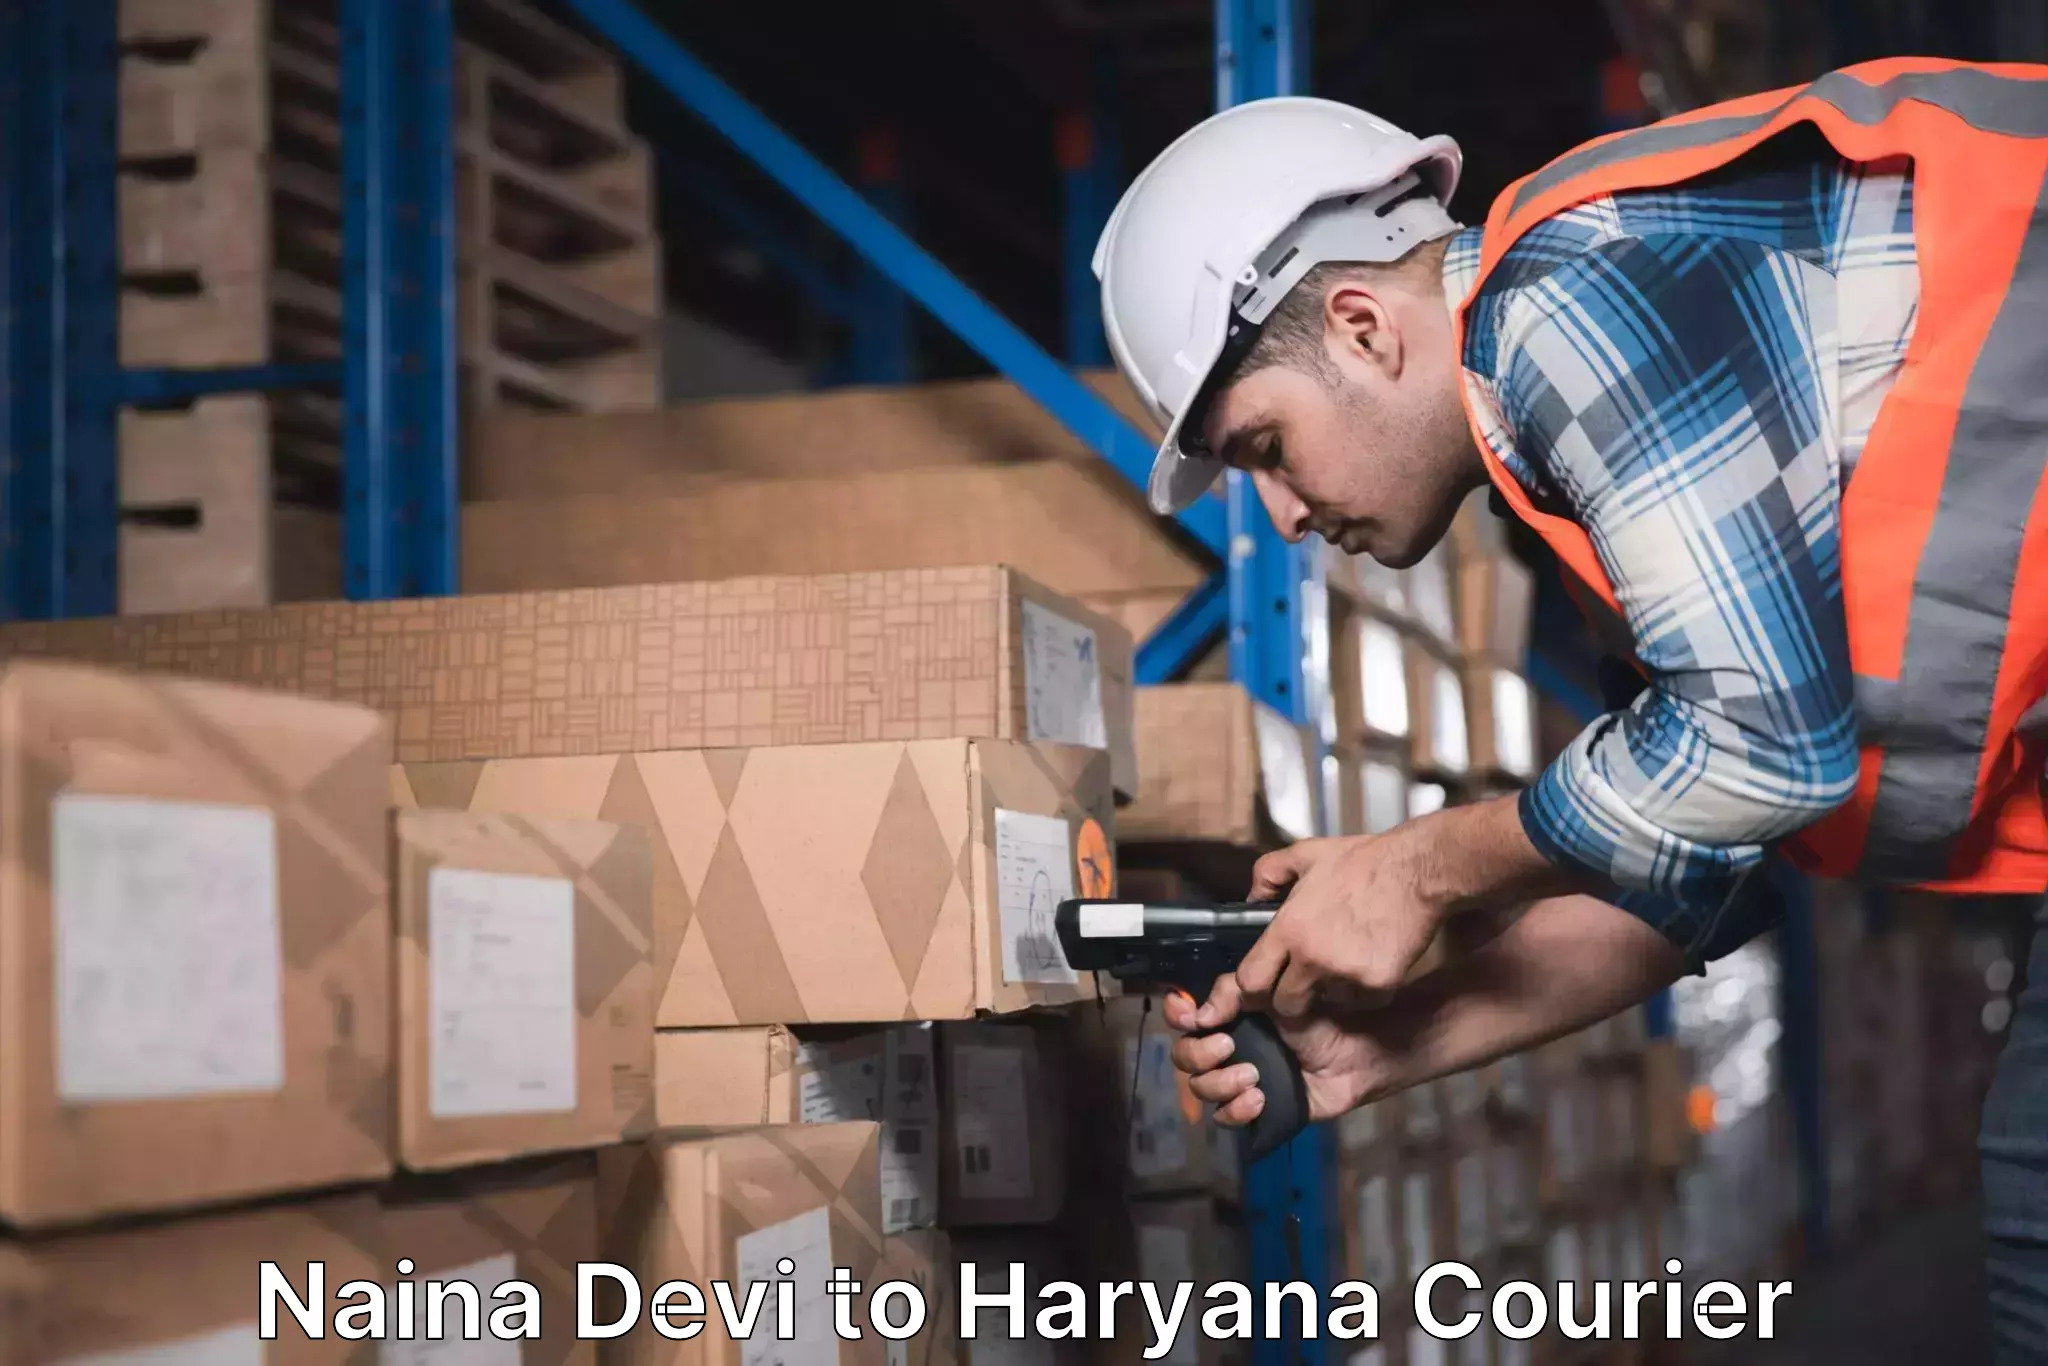 Express courier facilities Naina Devi to Gurgaon